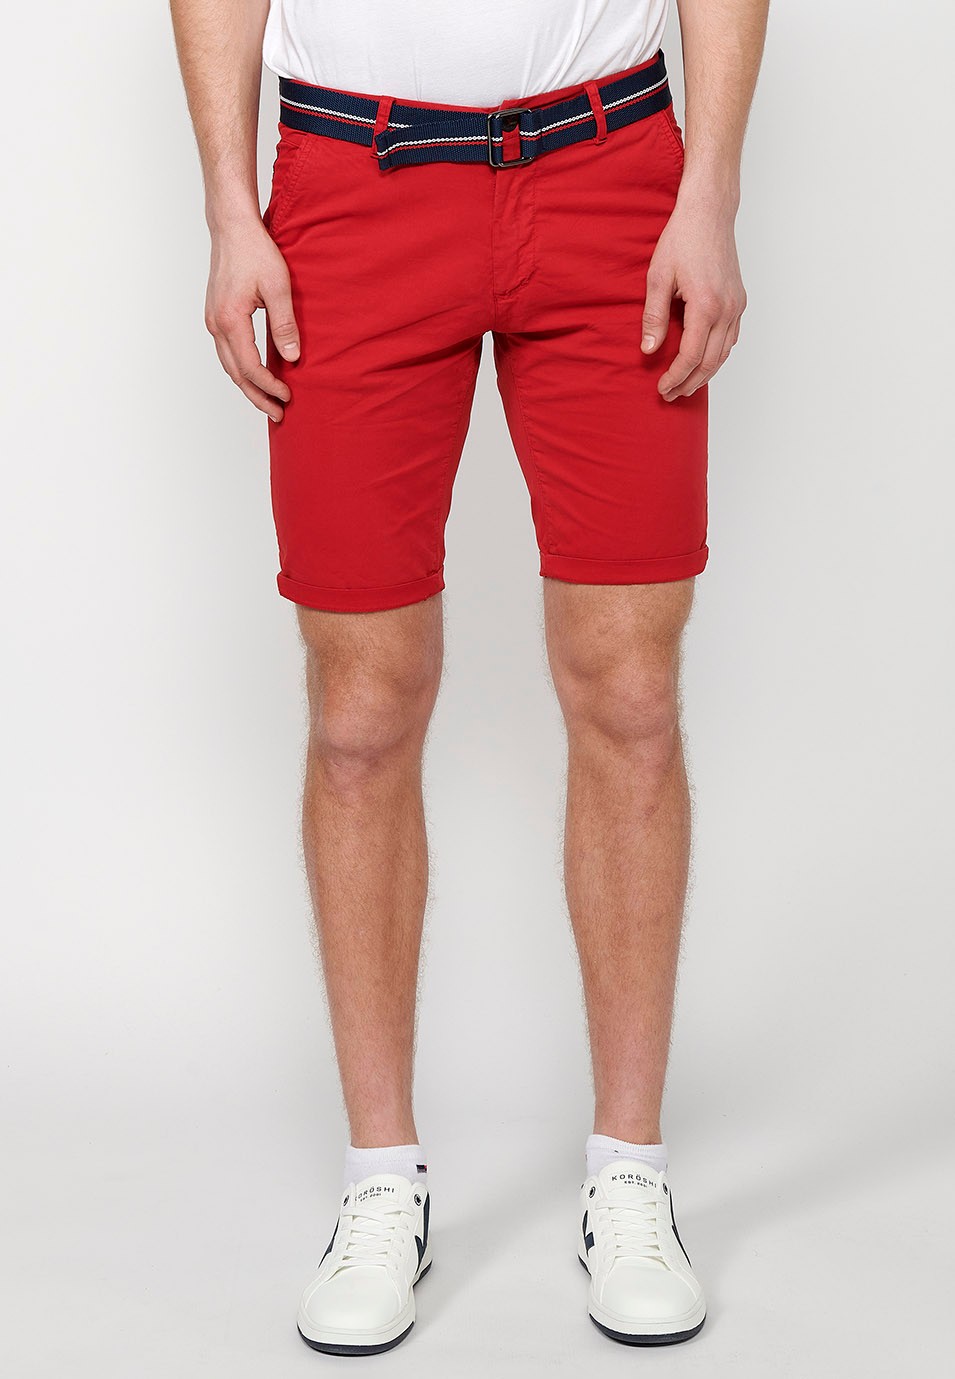 Pantalons curts acabats en volta amb Tancament davanter amb cremallera i botó i cinturó de Color Roig per a Home 4